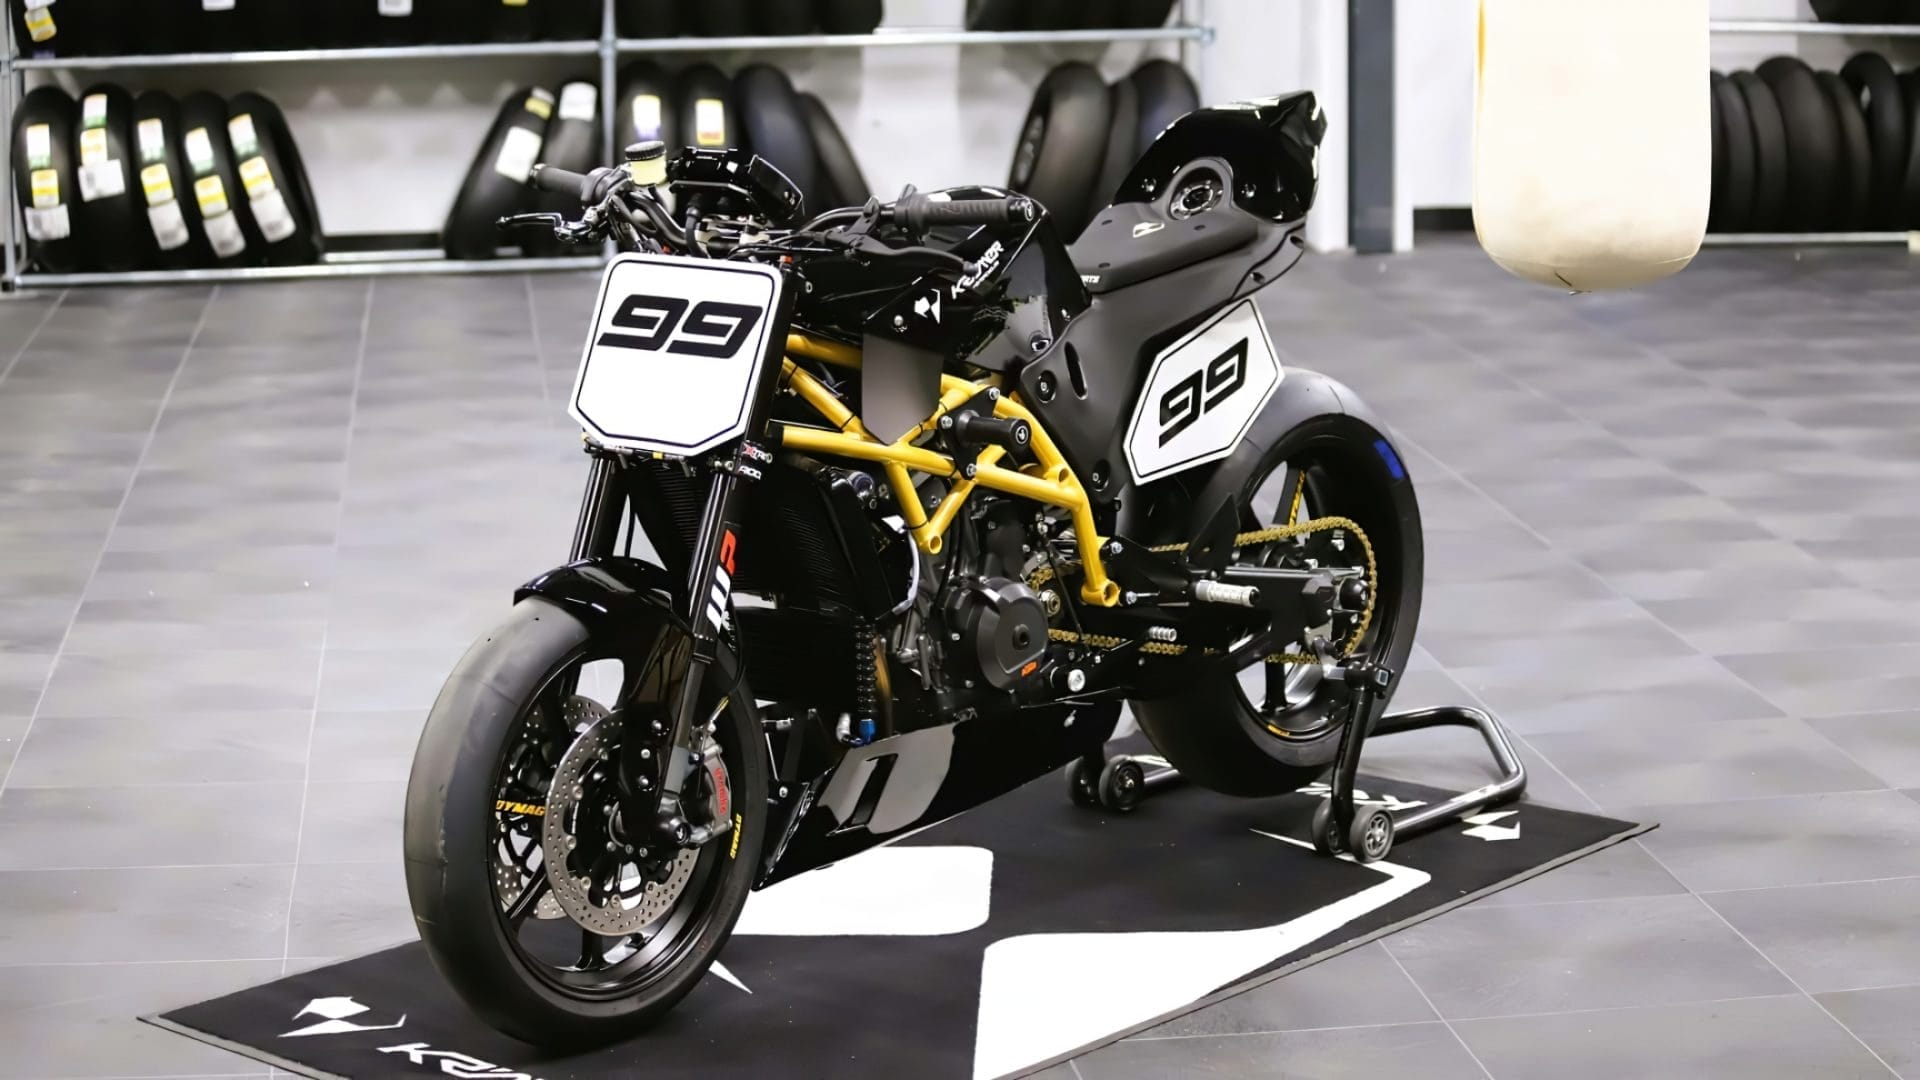 Das Super Hooligan Concept von Krämer Motorcycles: Ein Naked Bike, das die Grenzen sprengt